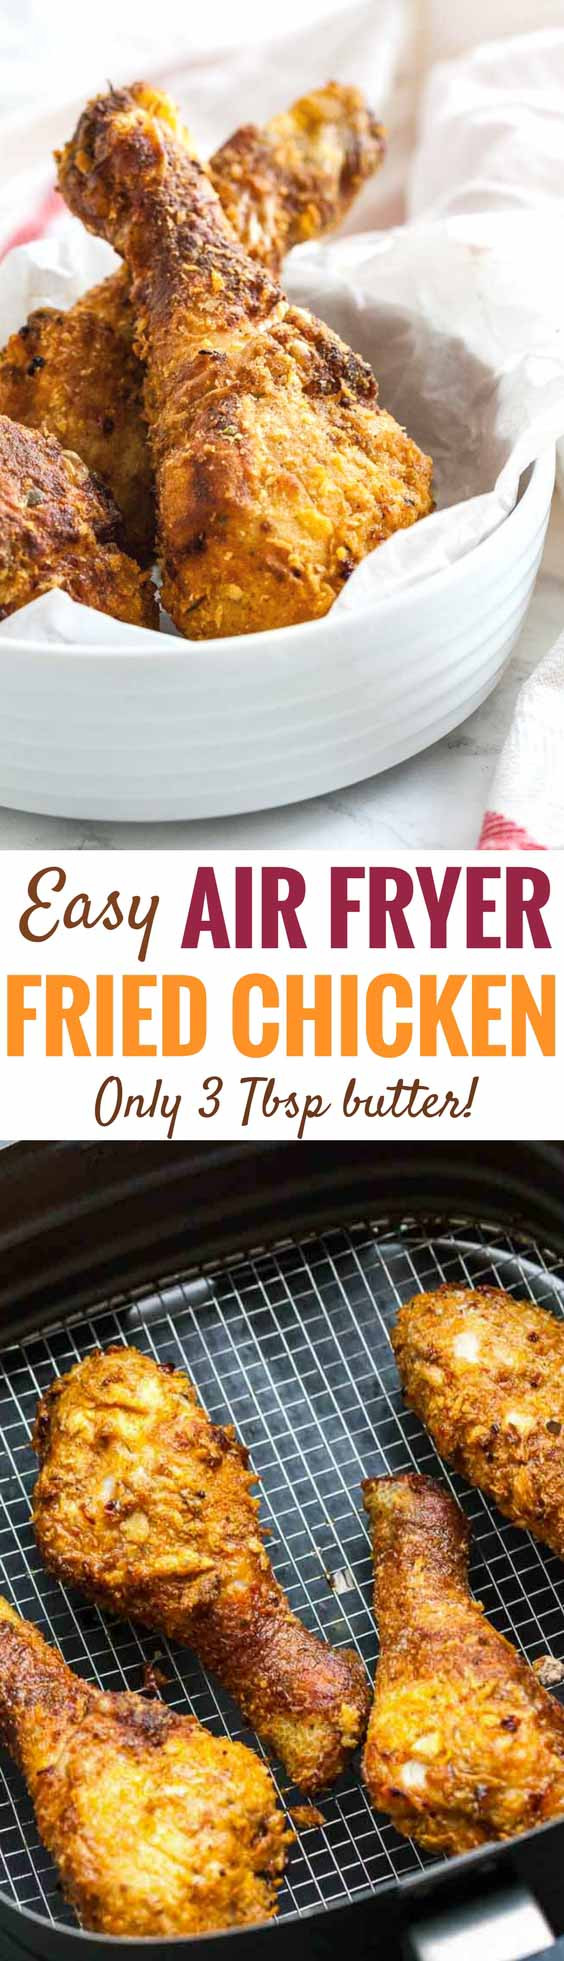 Chicken Legs In Air Fryer
 AirFryer Chicken Drumsticks Easy Air Fryer fried chicken